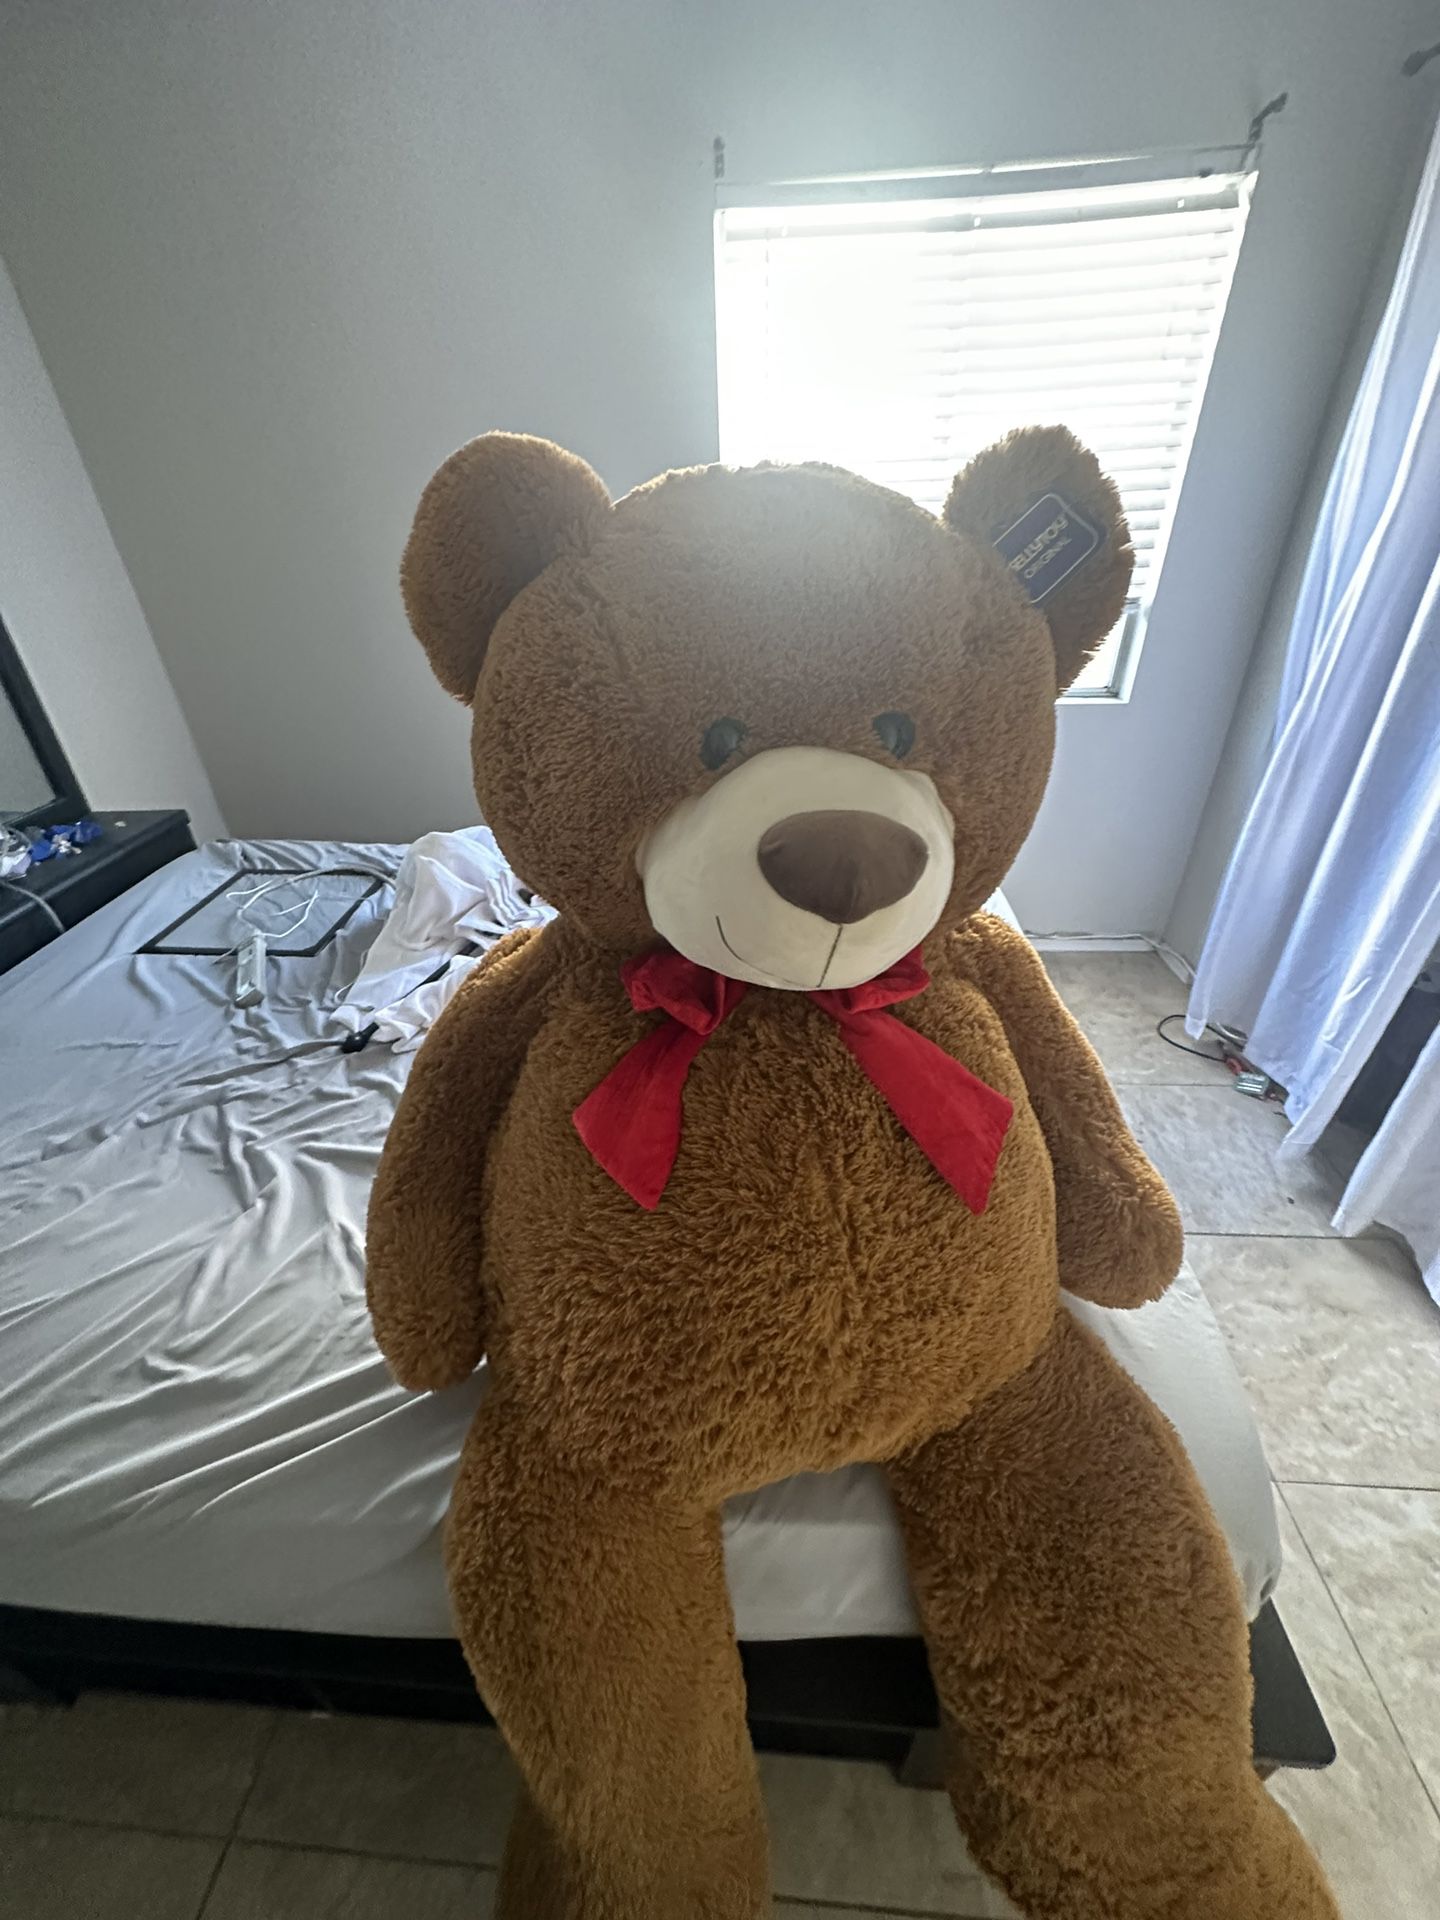 4ft+ oversized stuffed teddy bear 